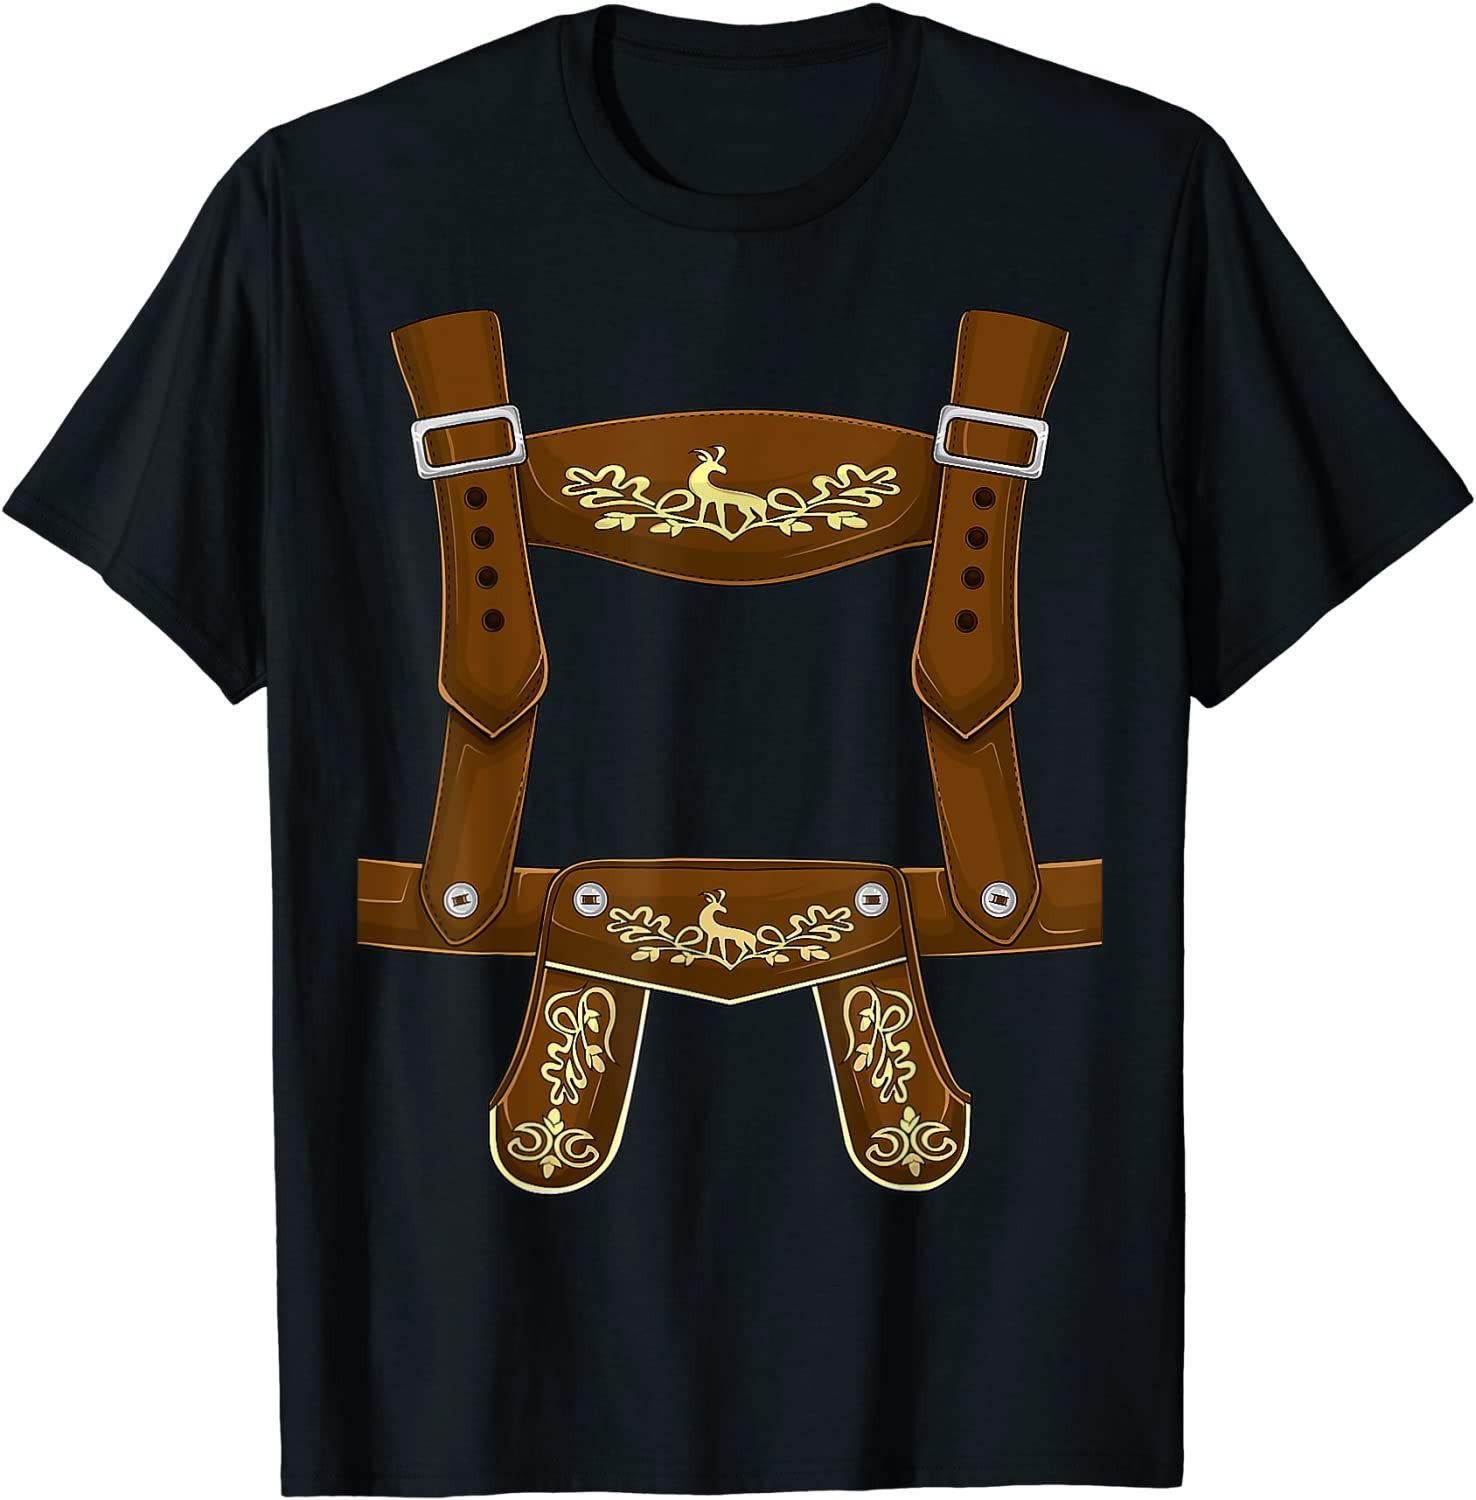 Lederhosen Suspenders Oktoberfest Costume Bavarian Beer Men T-Shirt